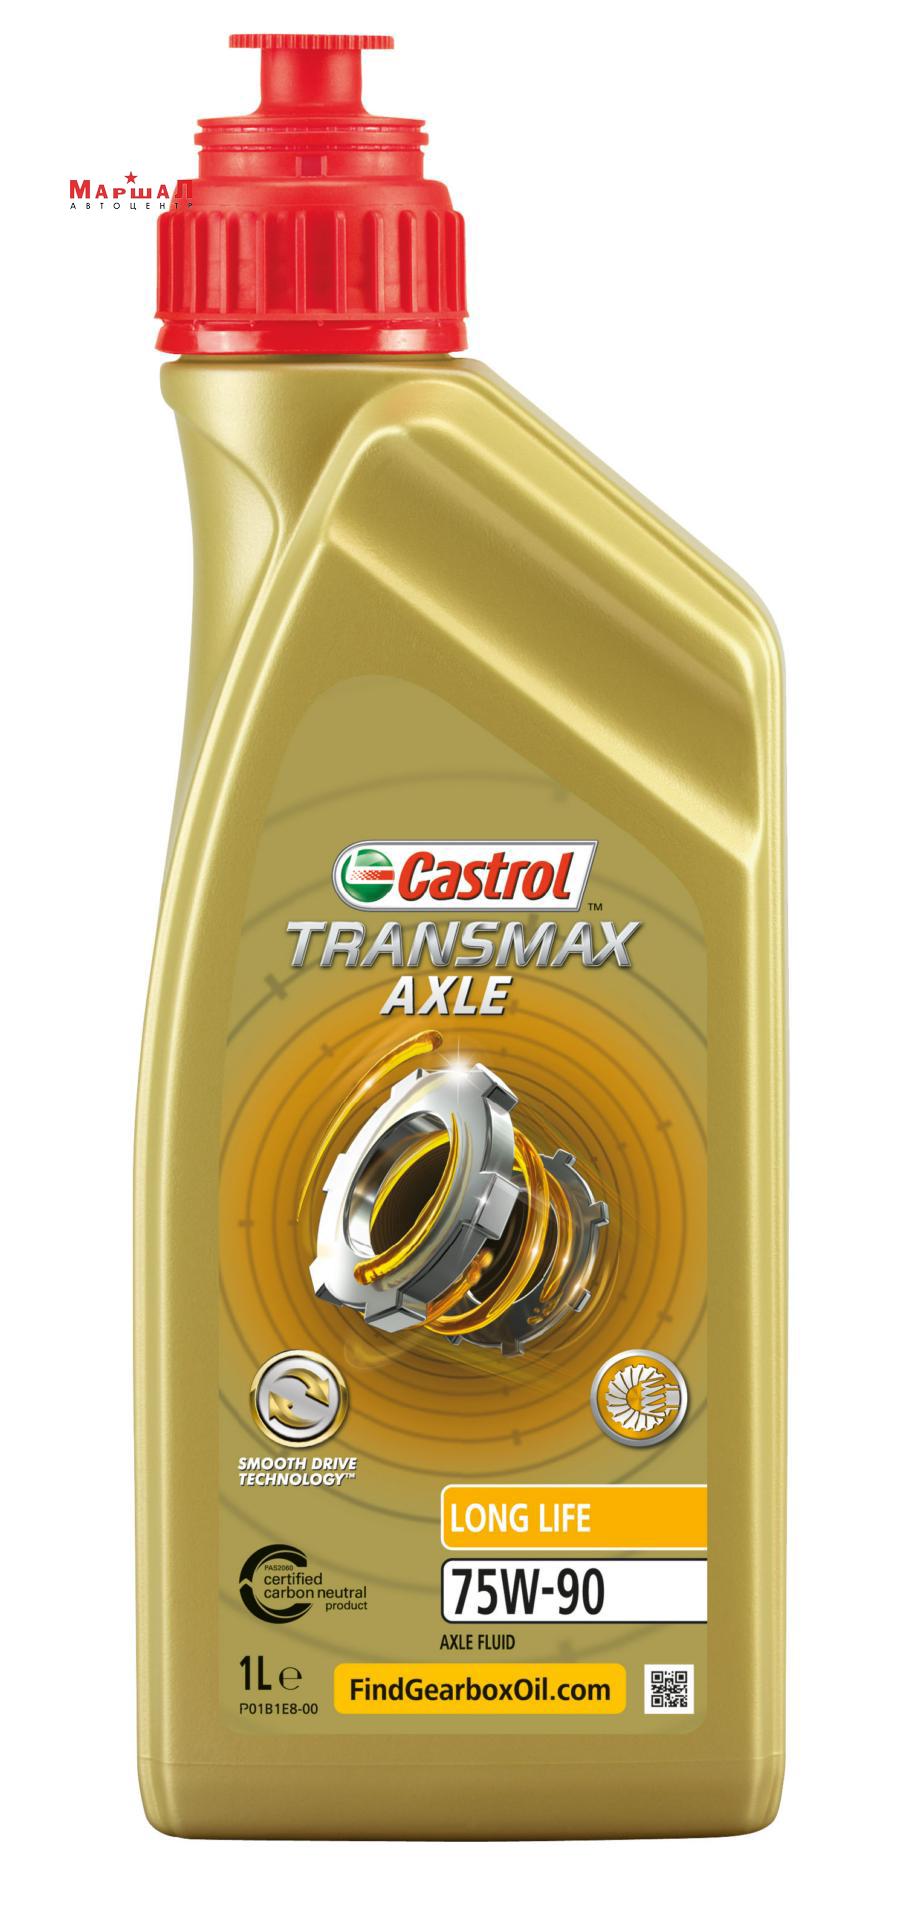 Масло трансмиссионное синтетическое Transmax Axle Long Life 75W-90, 1л